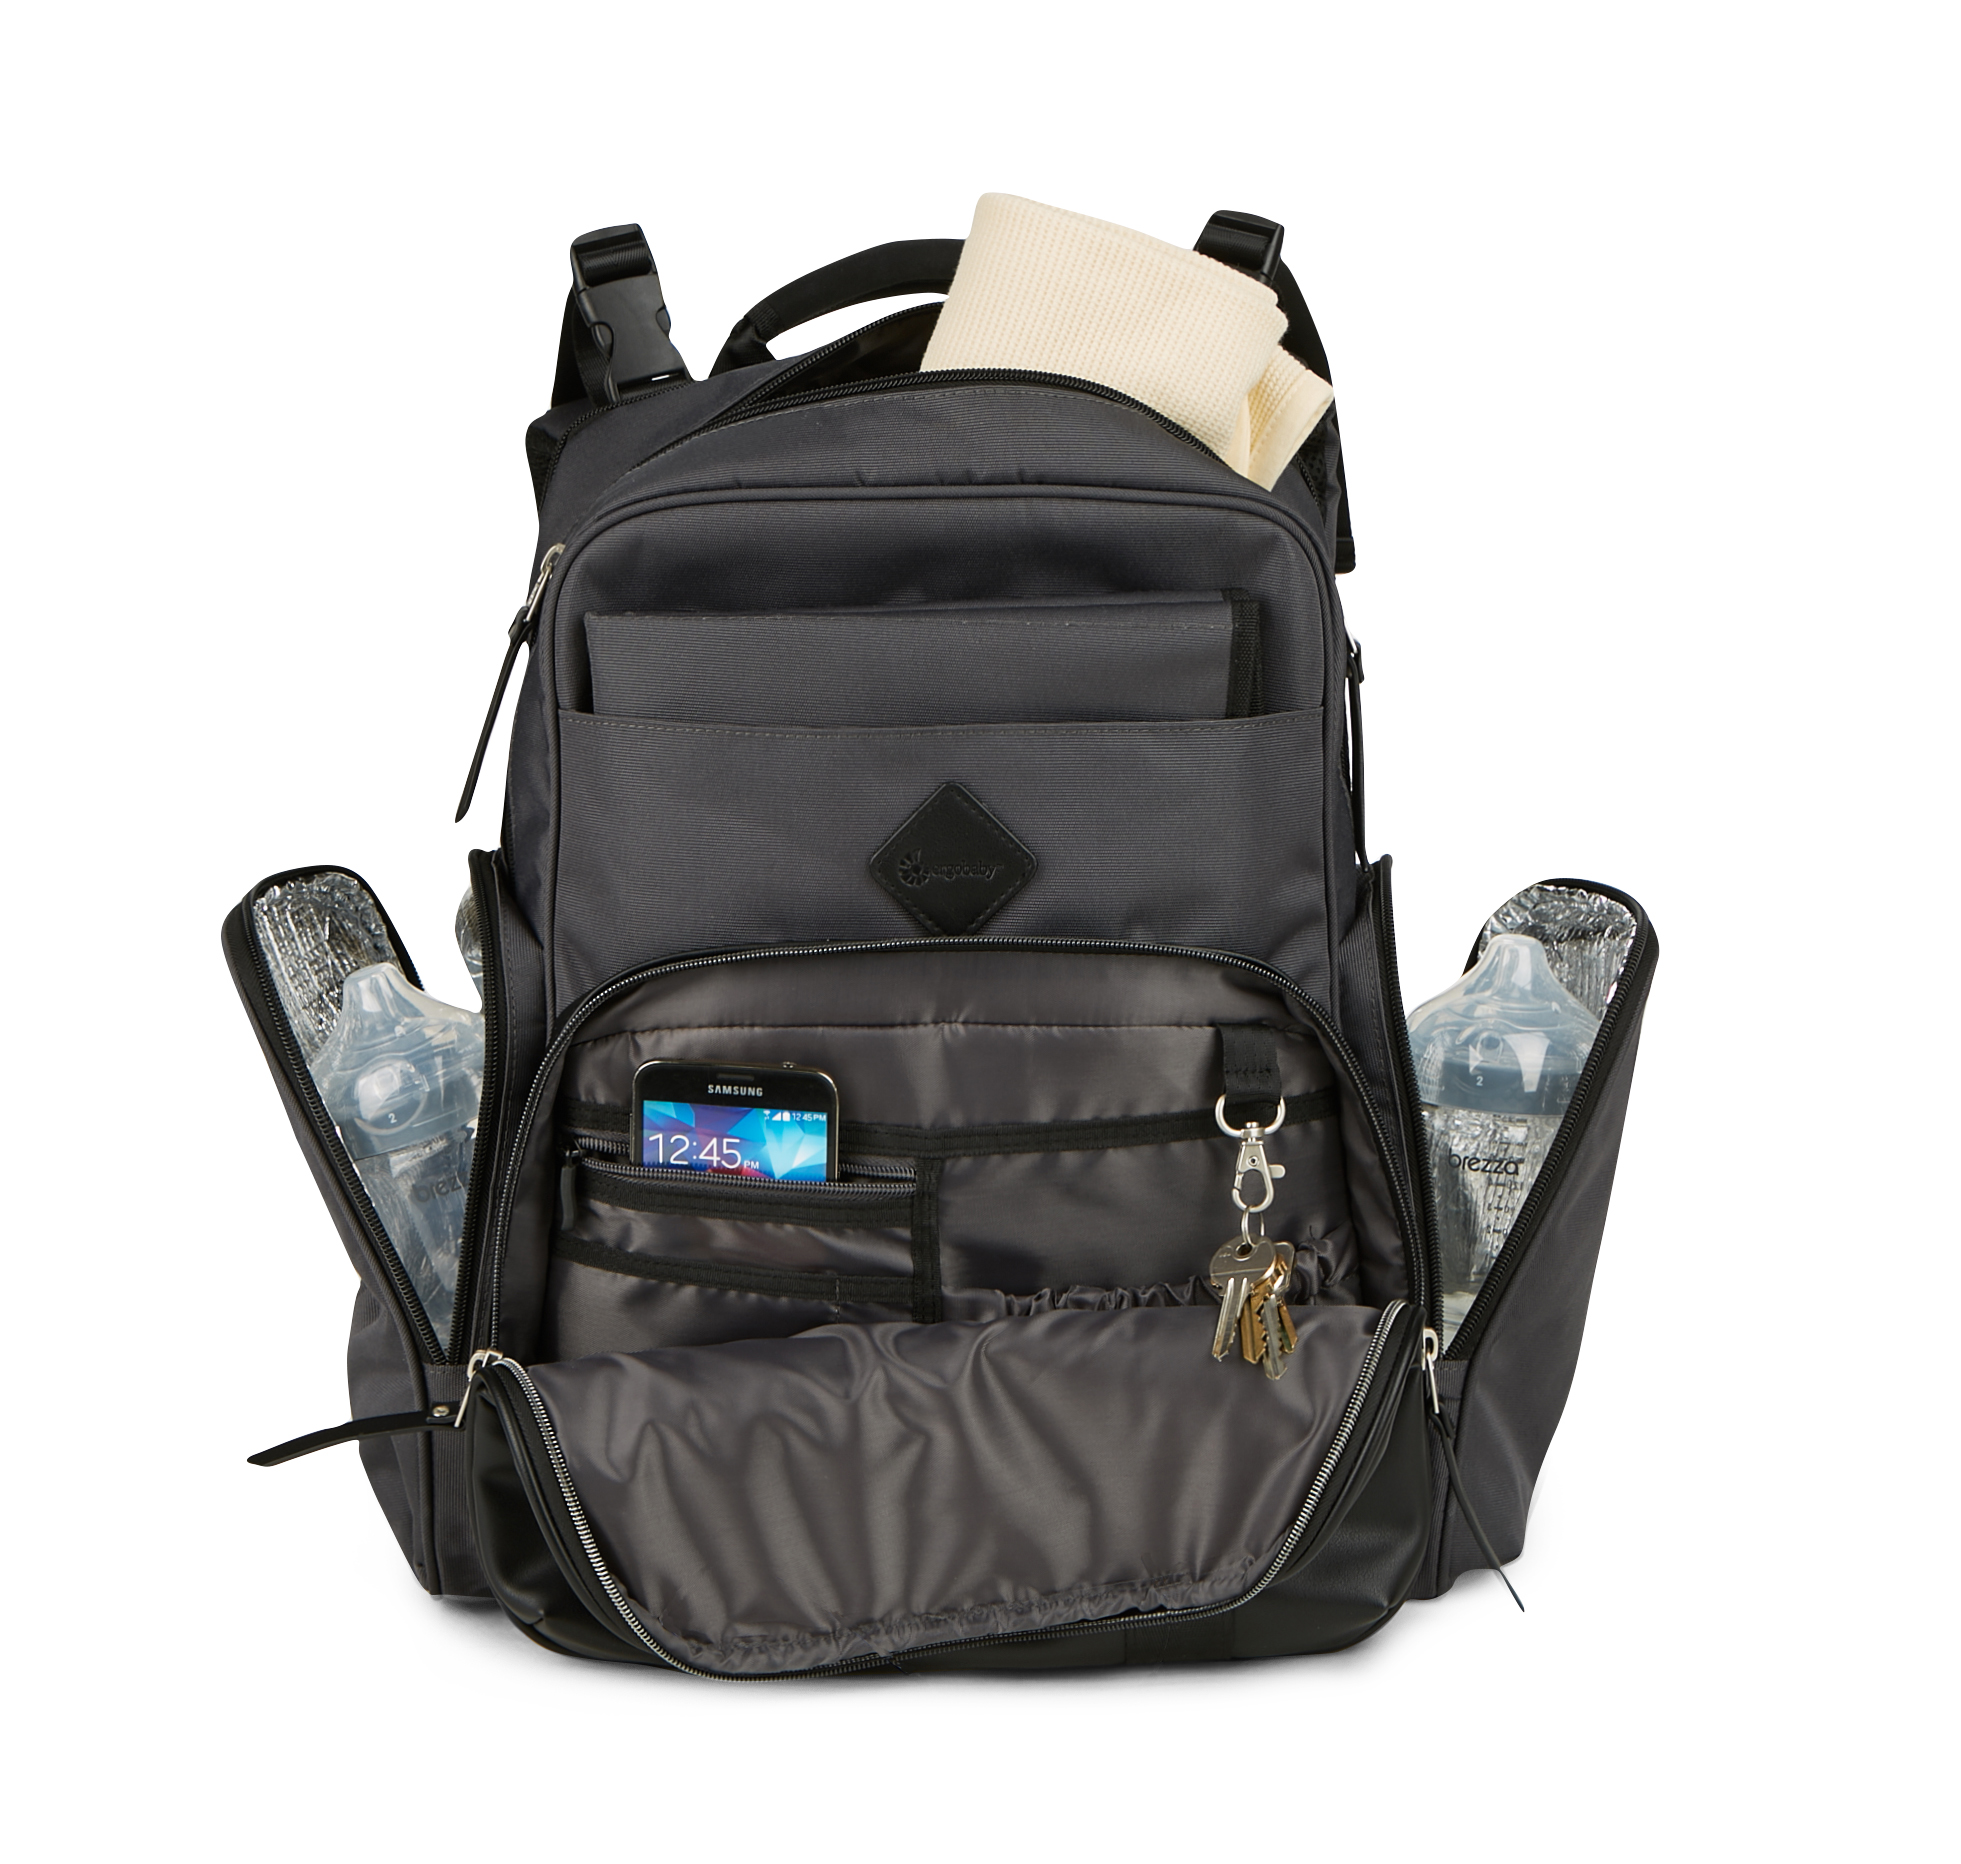 Ergobaby Adjustable Shoulder Strap Inside Pockets Backpack Diaper Bags, Black - image 4 of 10